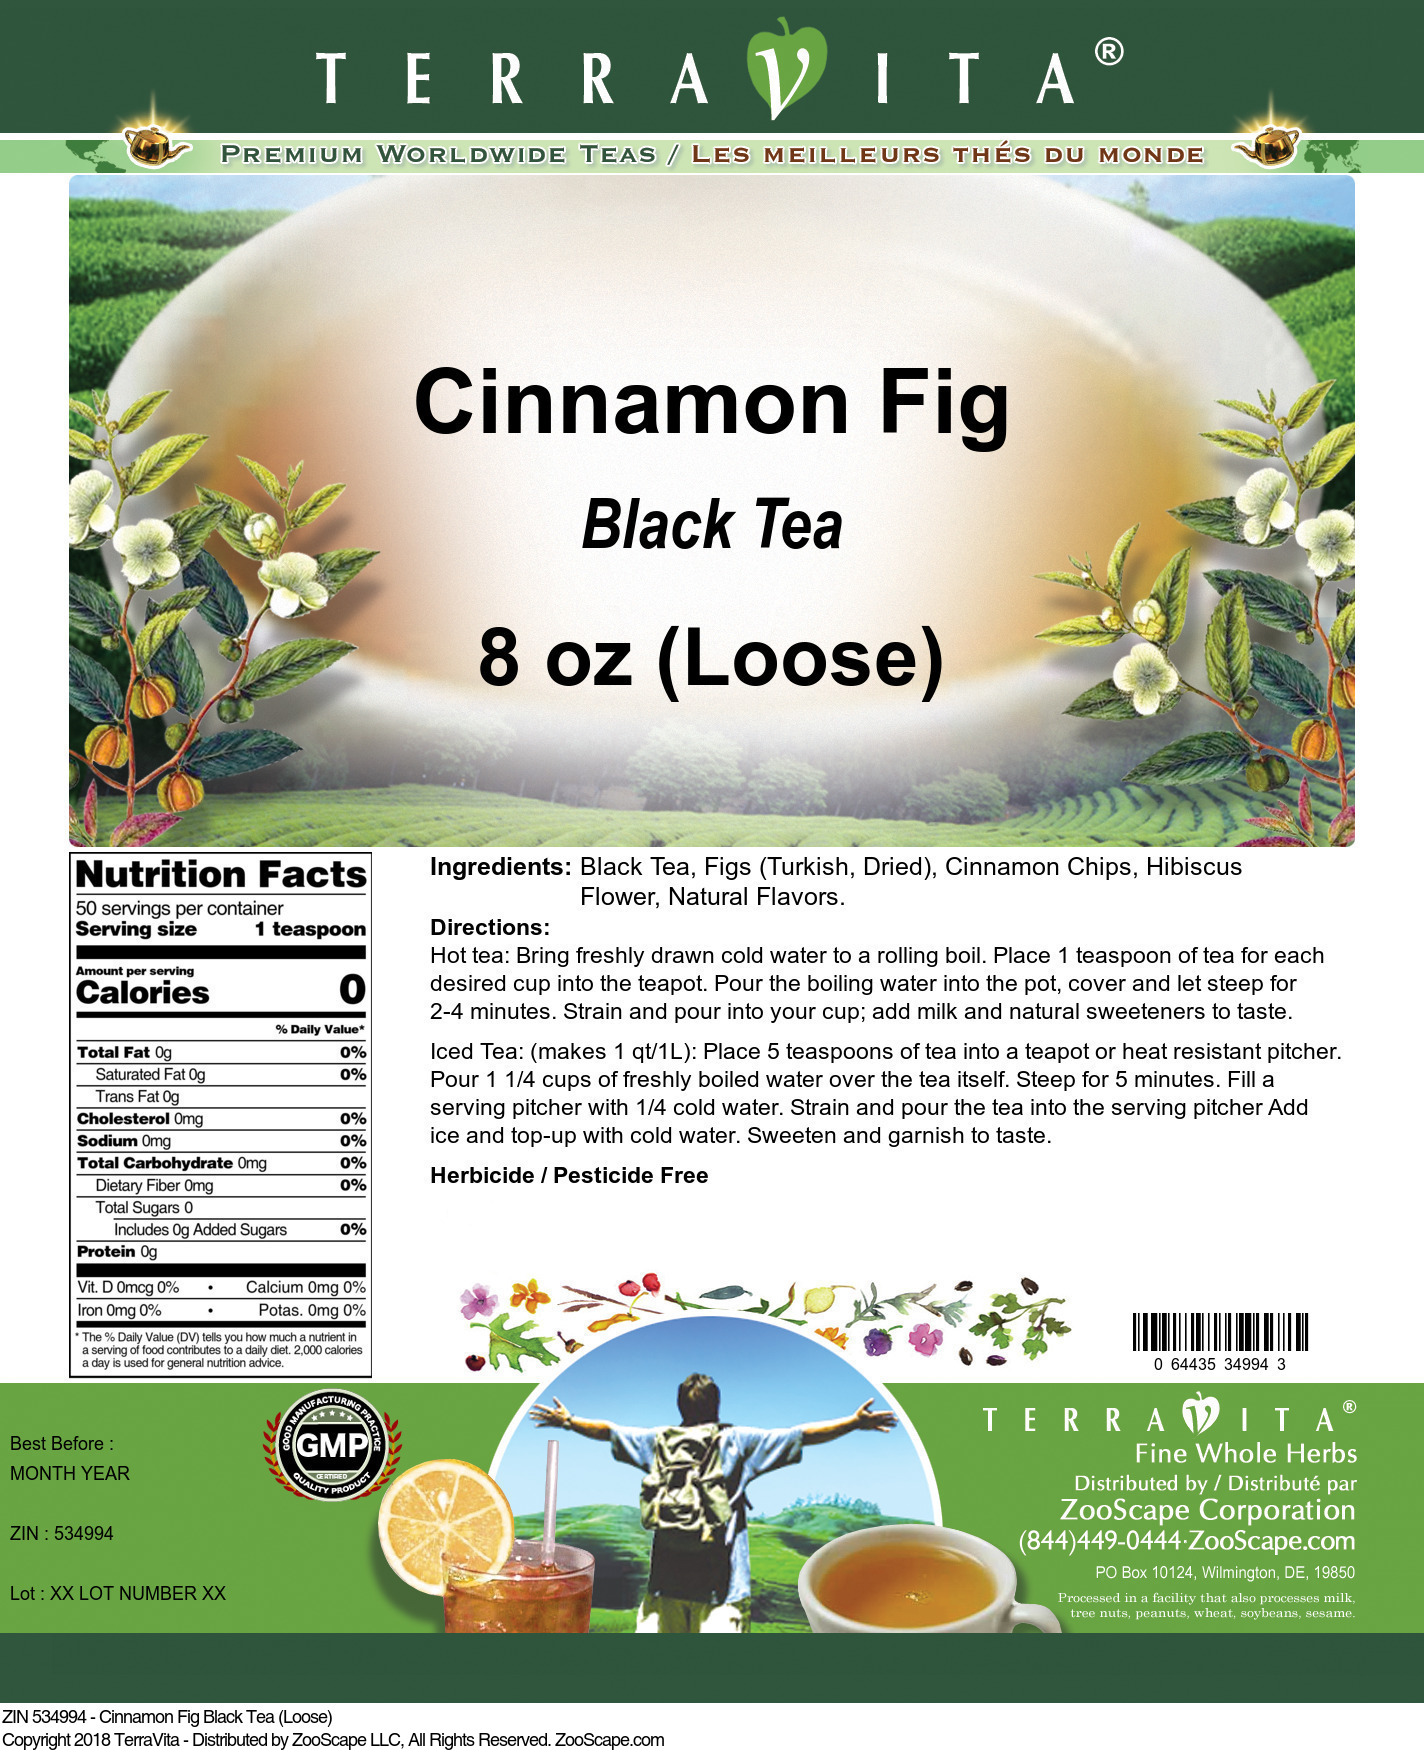 Cinnamon Fig Black Tea (Loose) - Label